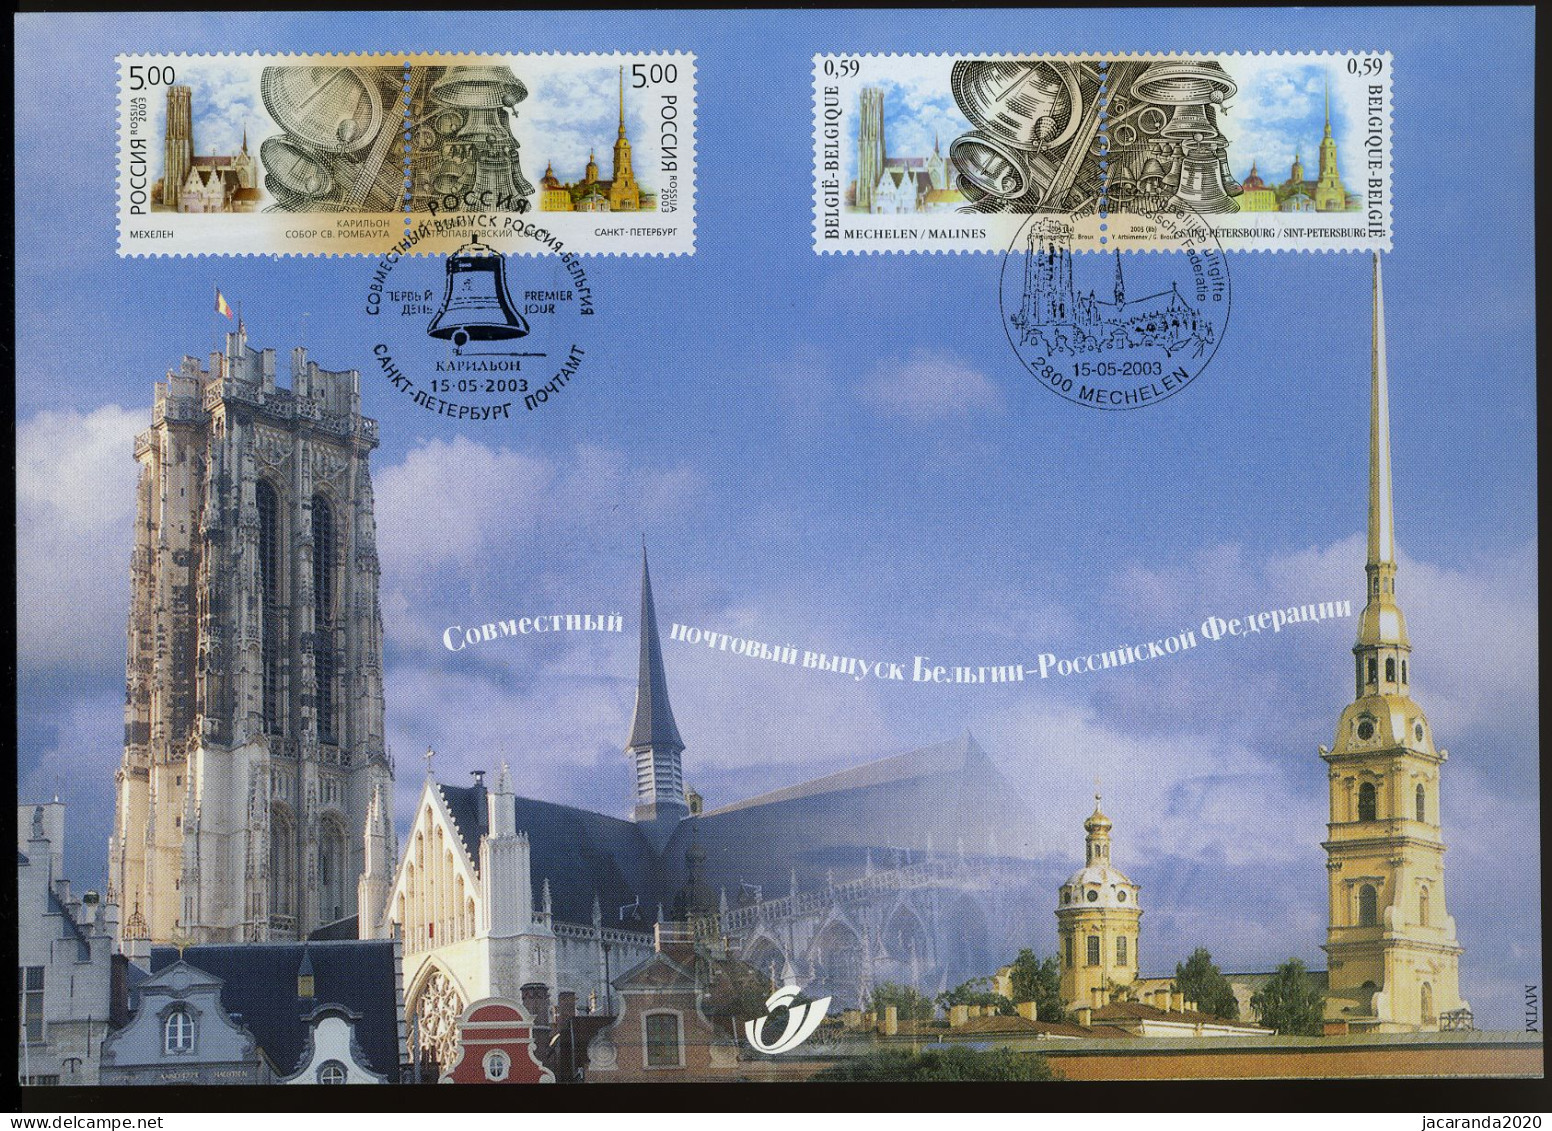 België 3170 HK - Klokken Van Mechelen - St.-Petersburg - Gem. Uitgifte Met De Russische Federatie - 2003 - Cartoline Commemorative - Emissioni Congiunte [HK]